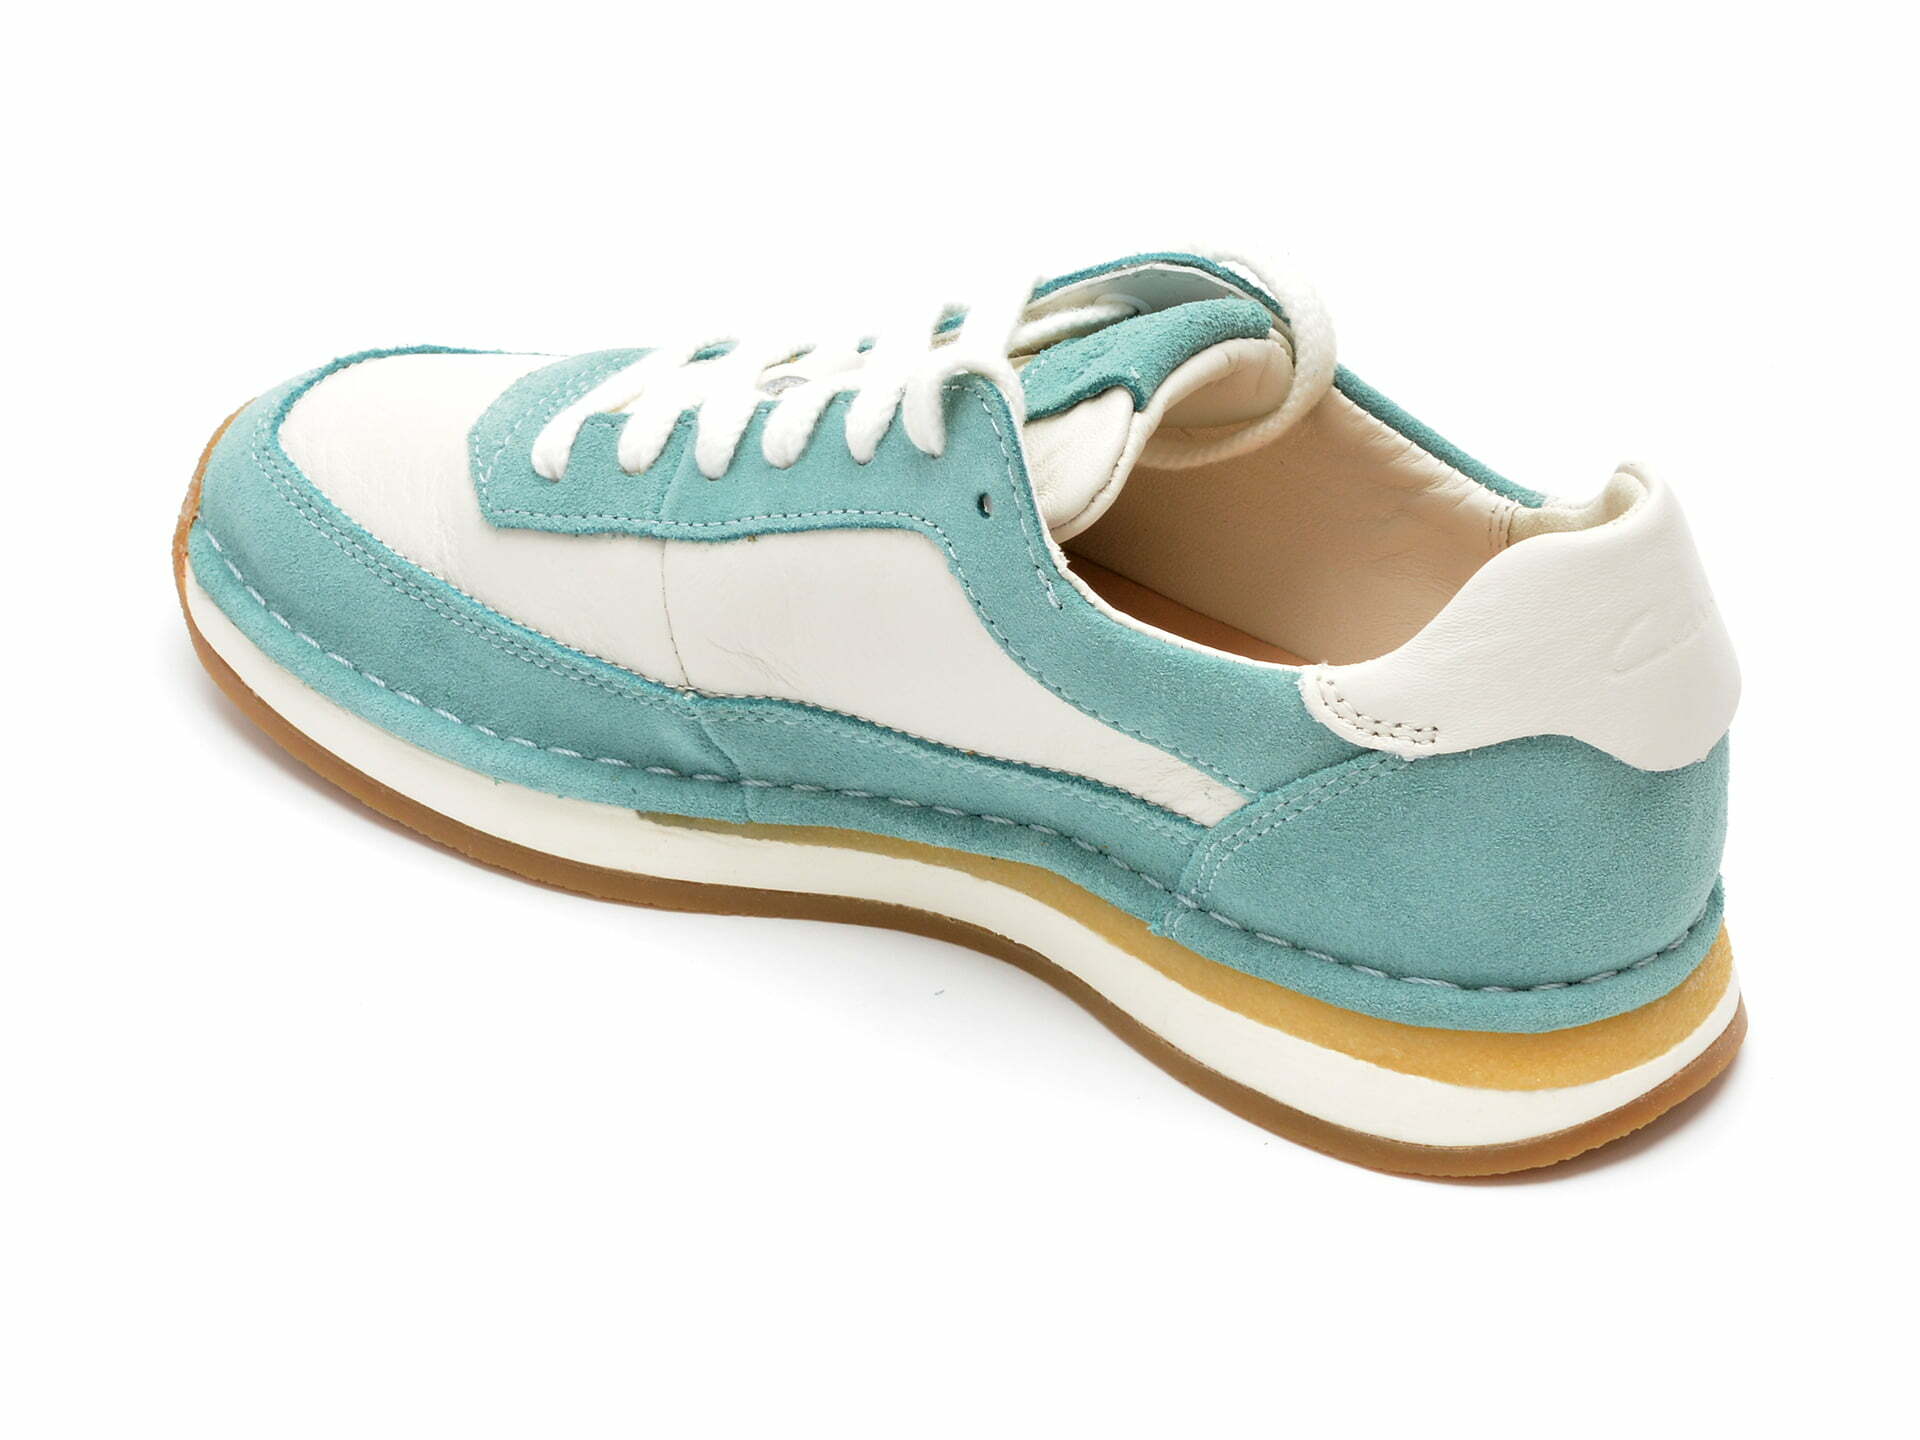 Comandă Încălțăminte Damă, la Reducere  Pantofi sport CLARKS albastri, CRARULA, din piele intoarsa Branduri de top ✓